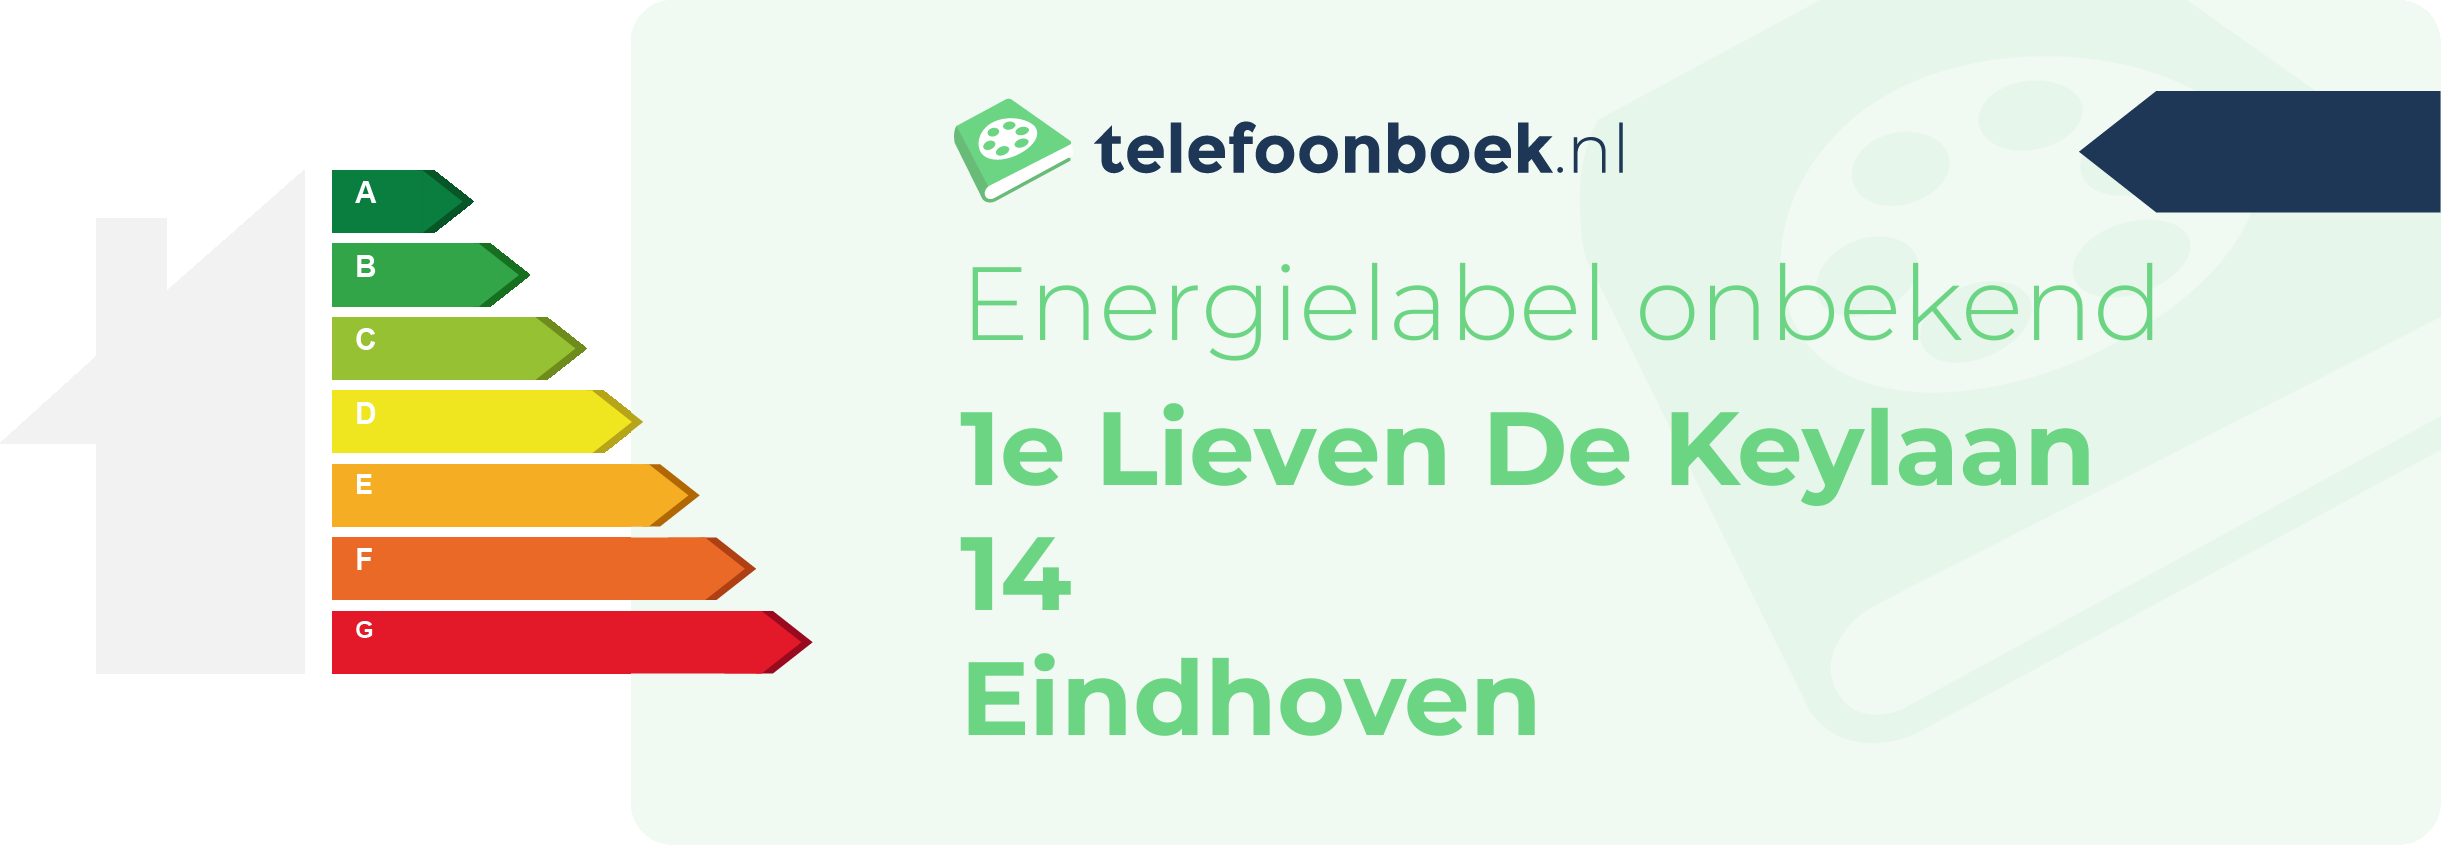 Energielabel 1e Lieven De Keylaan 14 Eindhoven